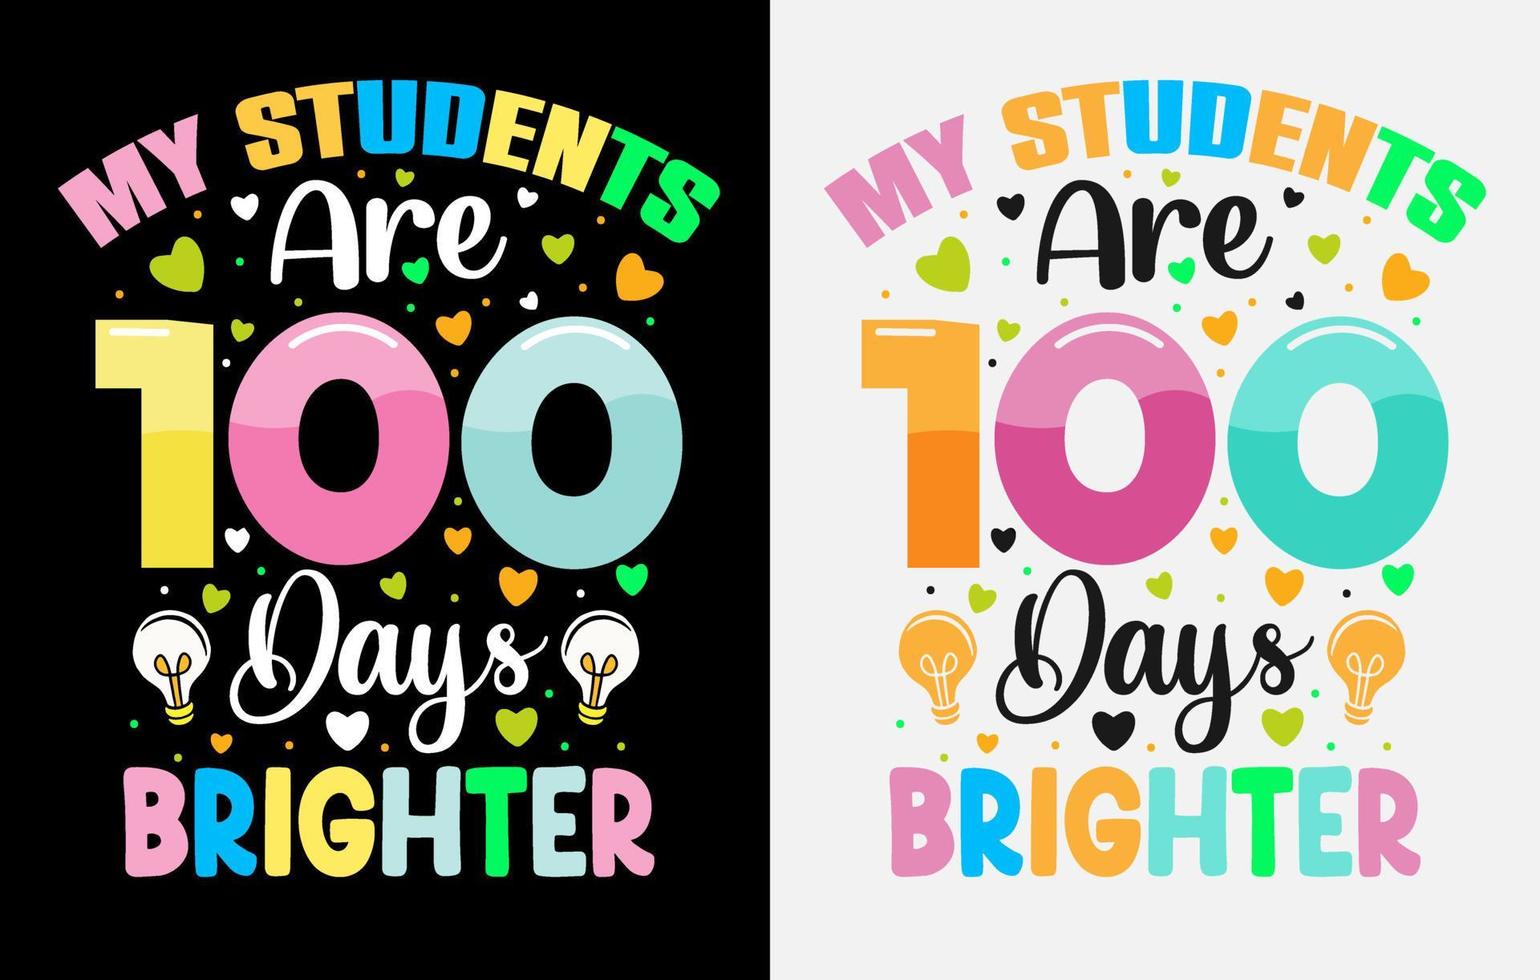 100ste dagen van school, honderd dagen t overhemd ontwerp, 100ste dagen viering t overhemd vector